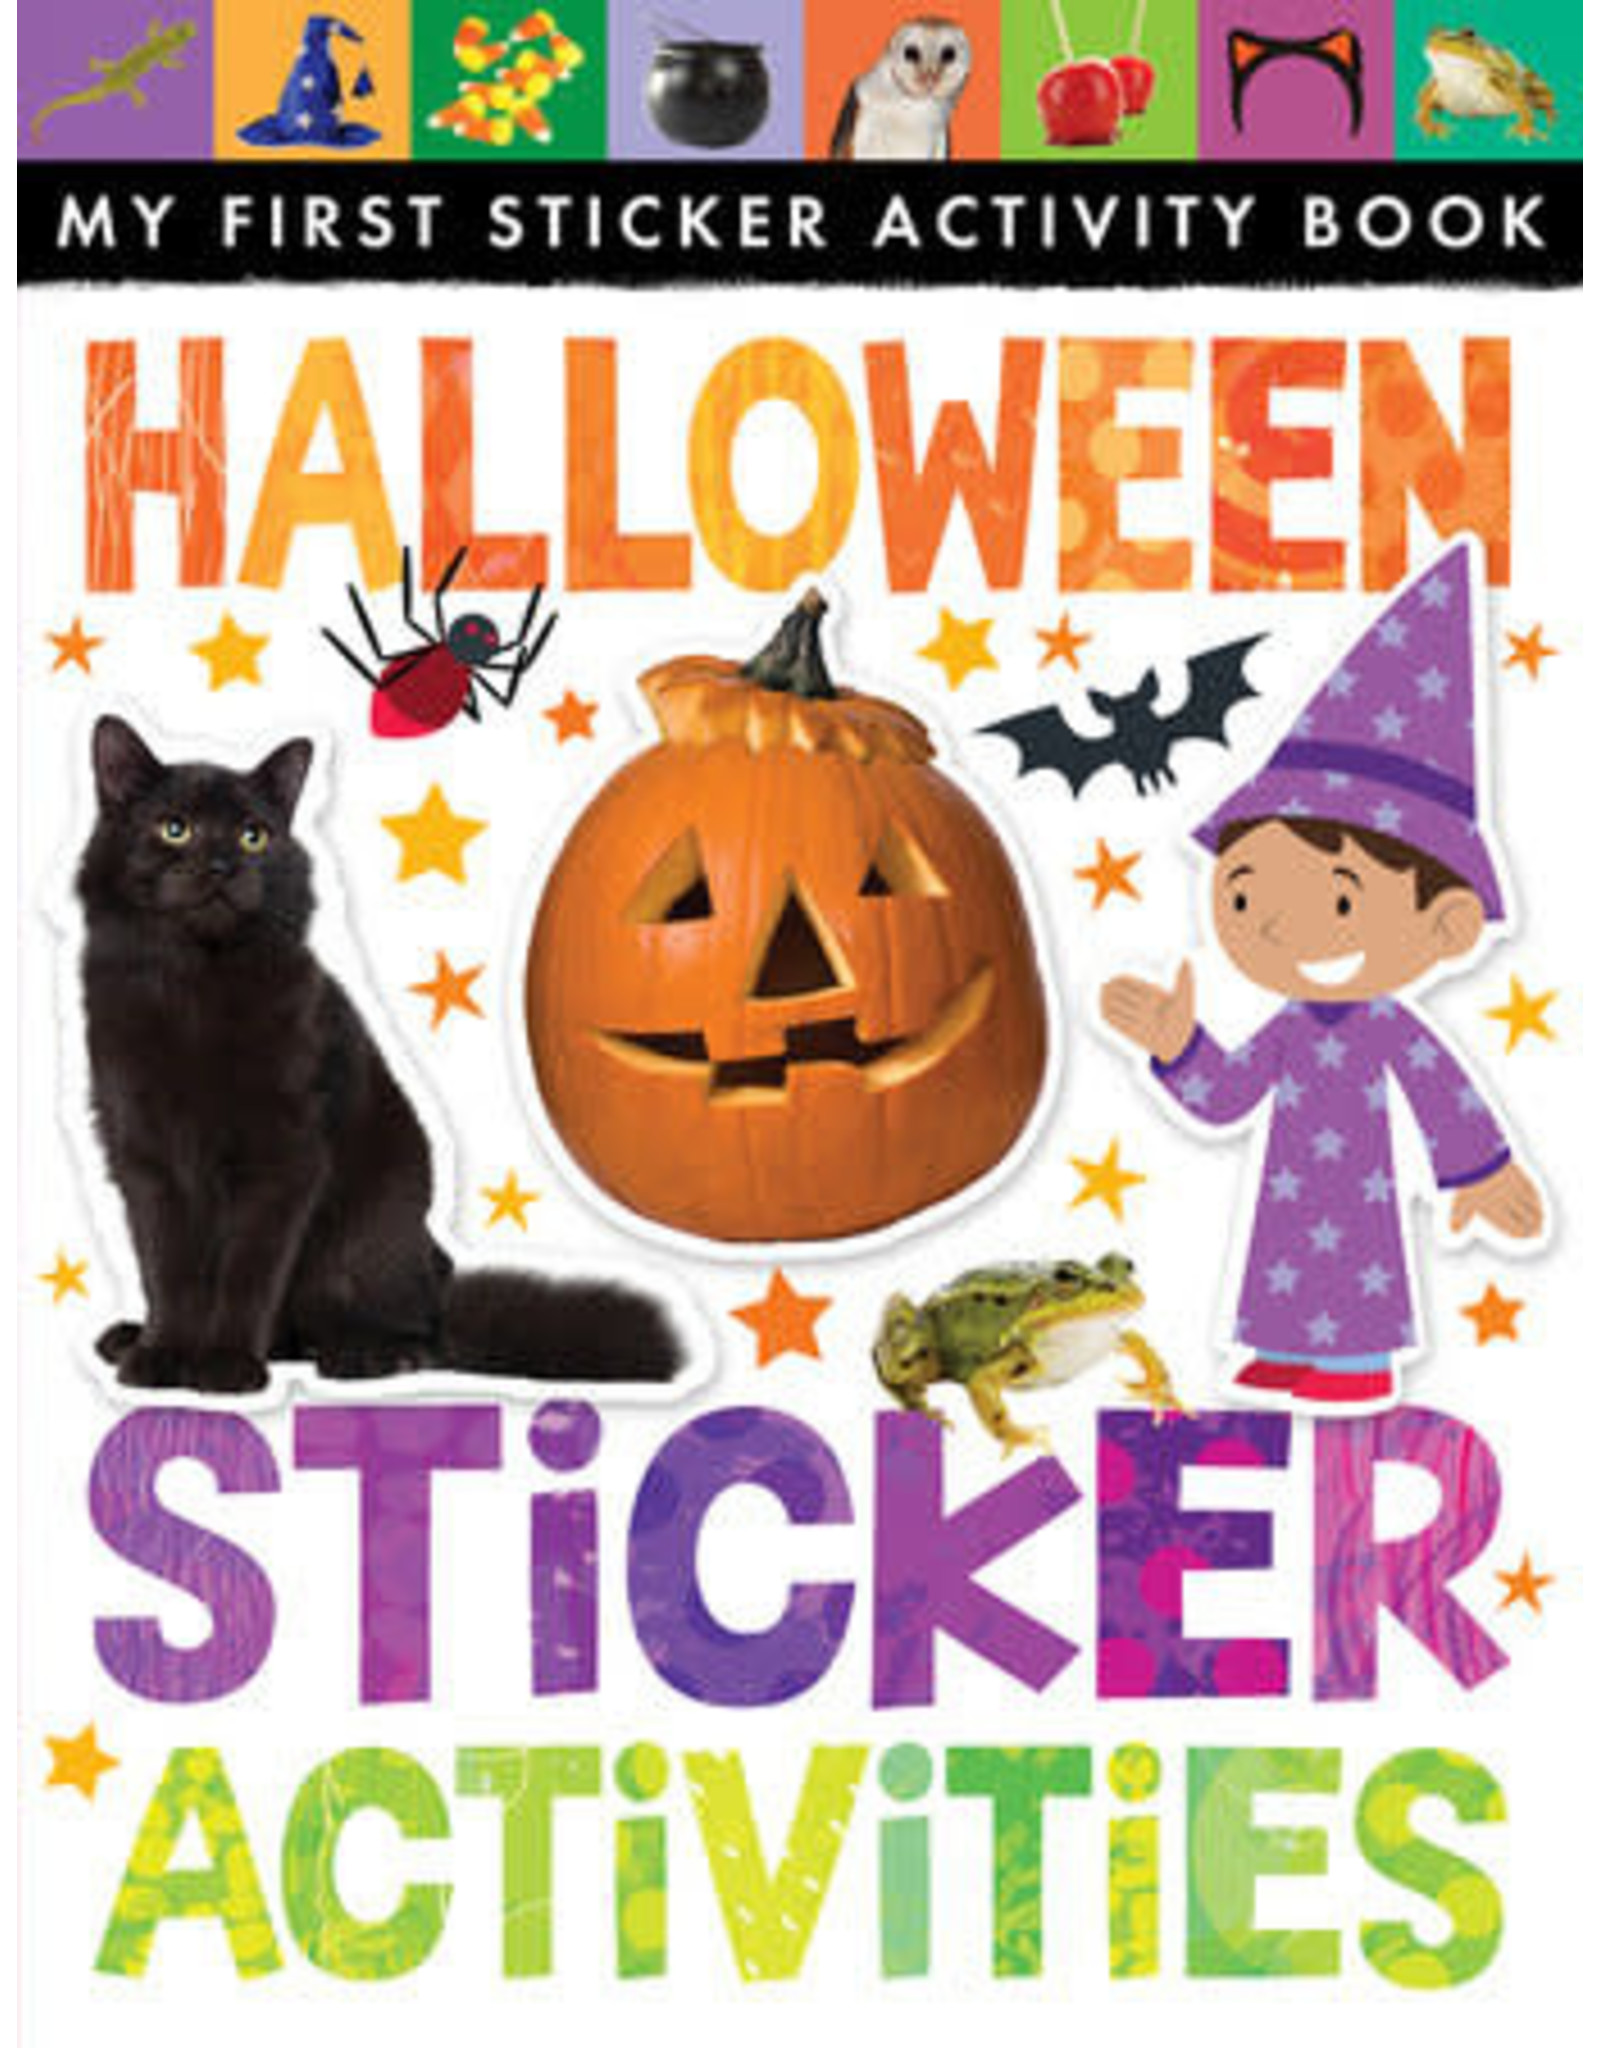 Halloween Sticker Activities